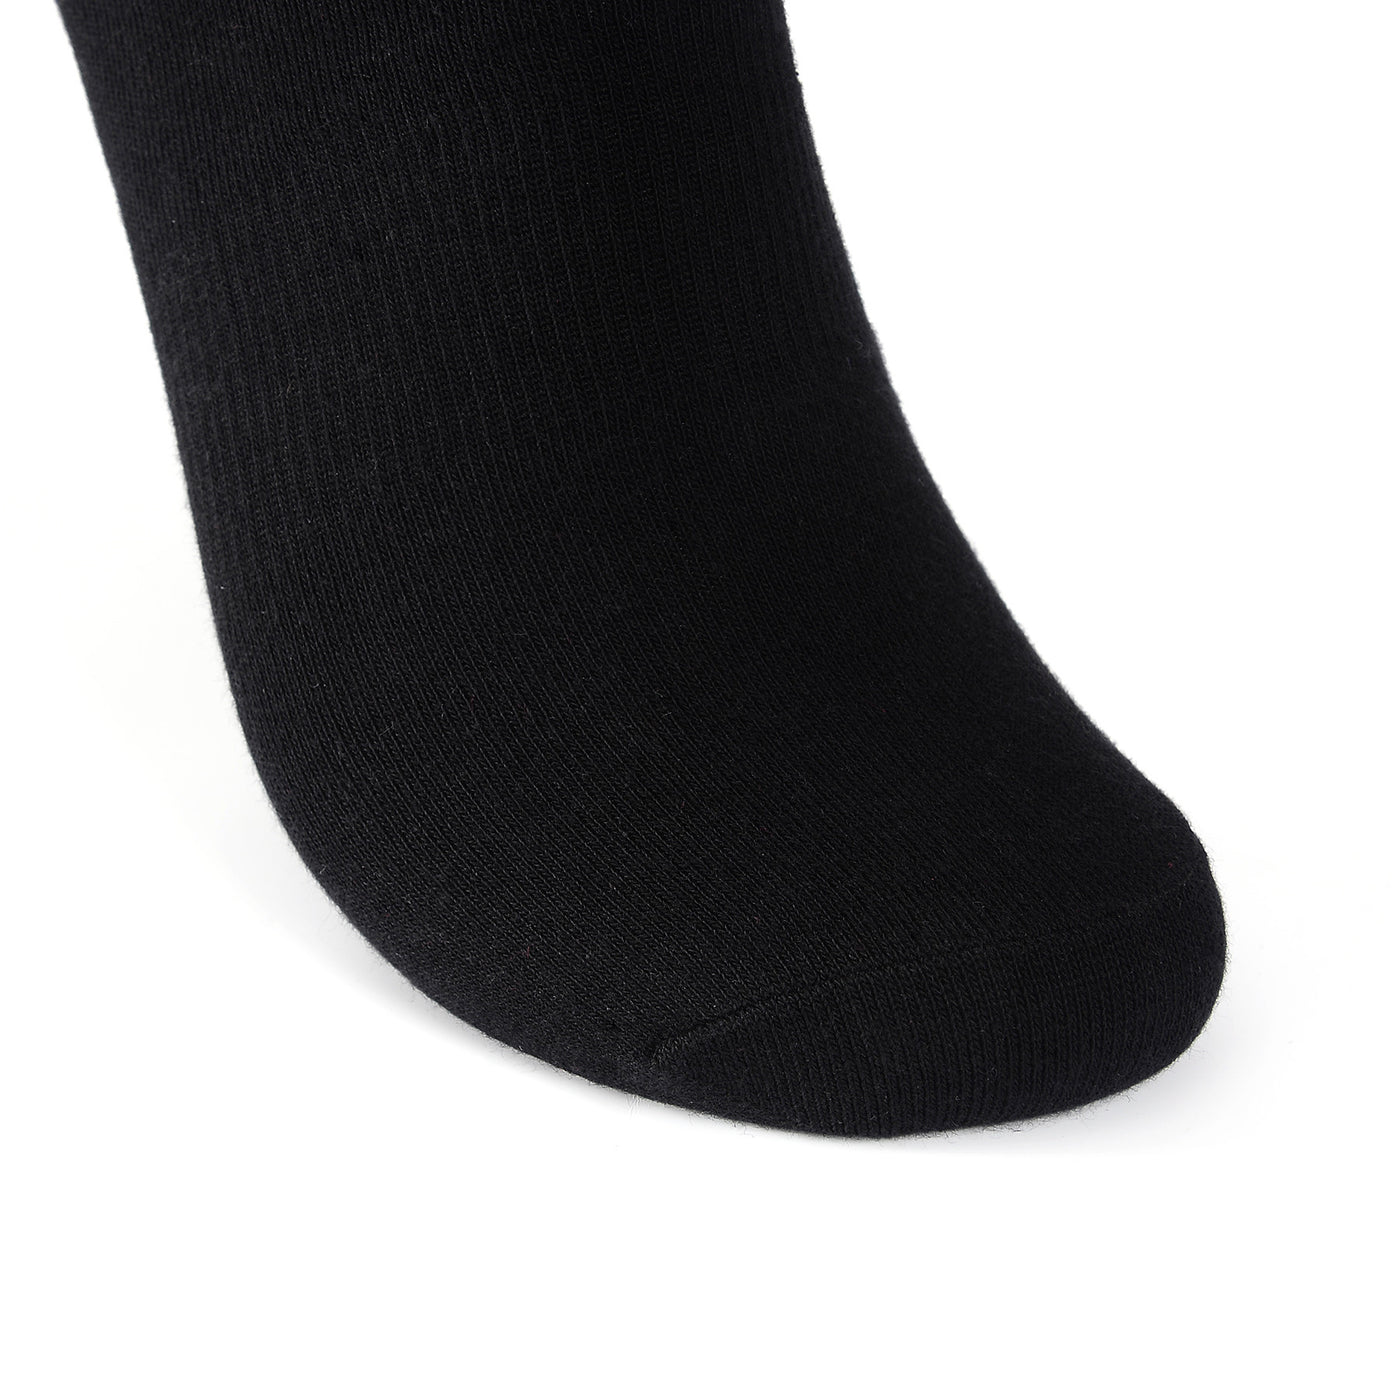 Laulax 6 paires de chaussettes d'entraînement pour soutien de la voûte plantaire en coton peigné fin, noir, taille UK 9-11/Europ 43-46